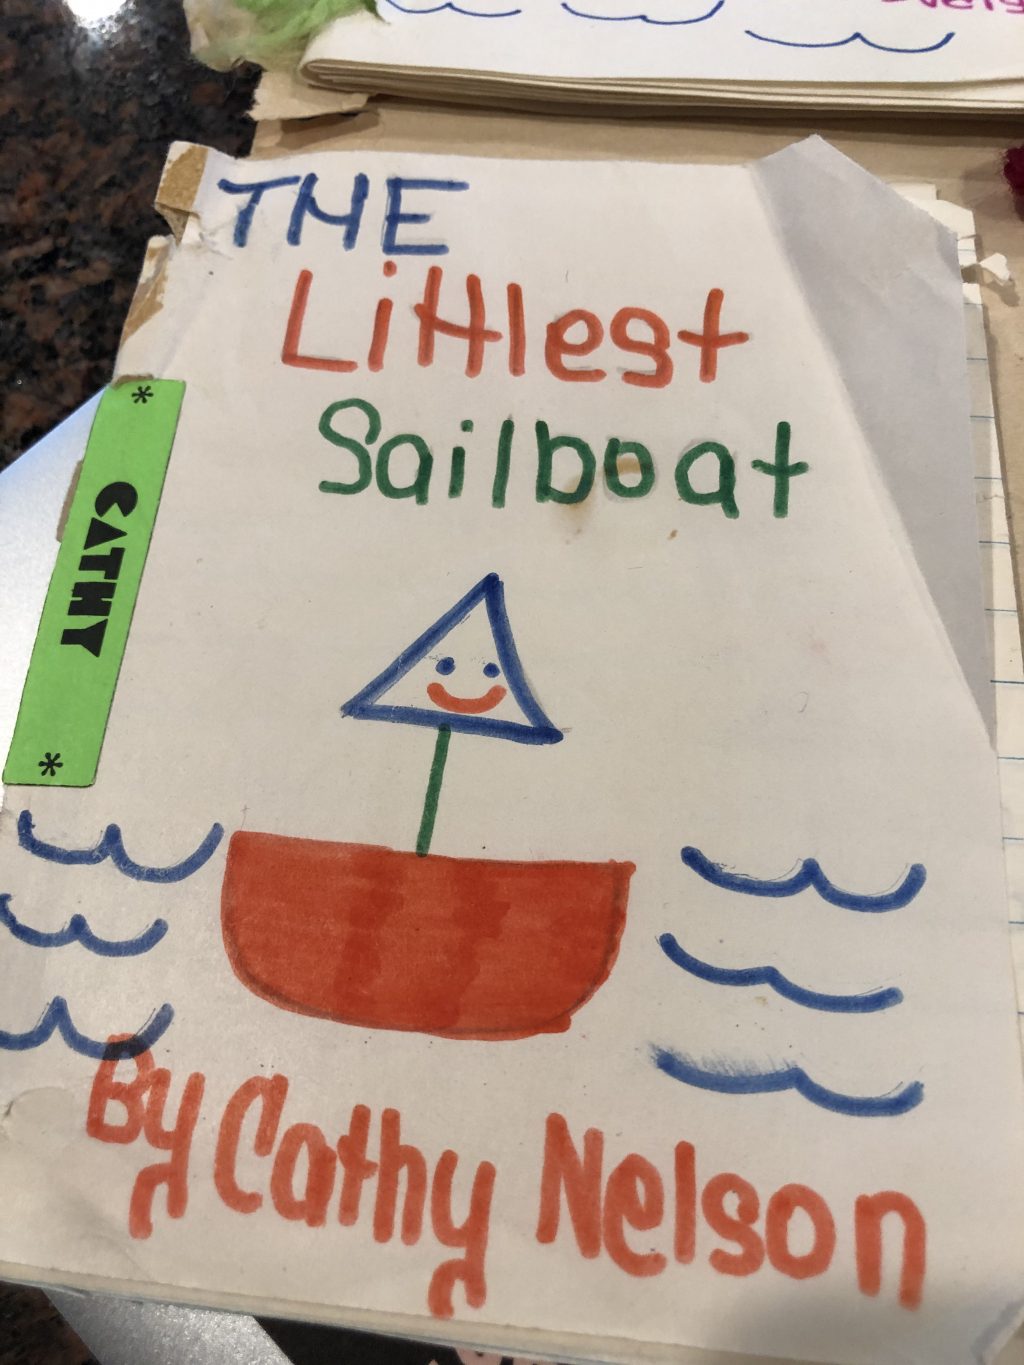 The Littlest Sailboard